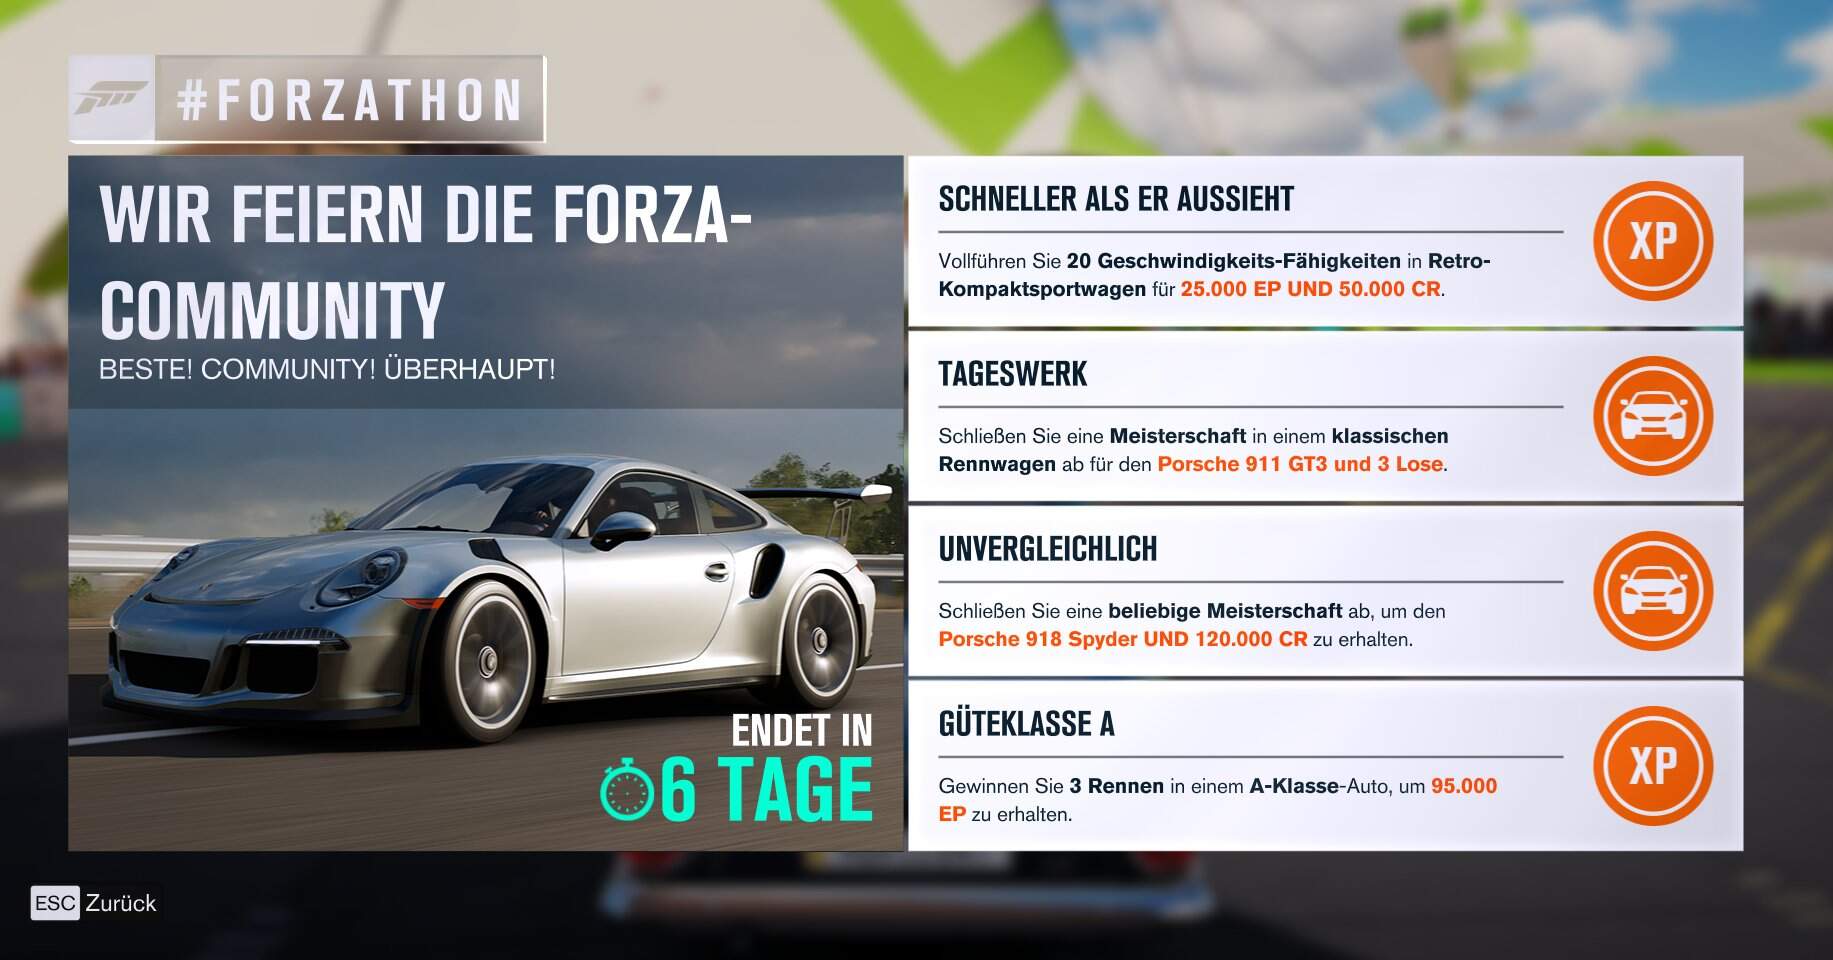 Forza Horizon 3 #Forzathon Guide KW 24 